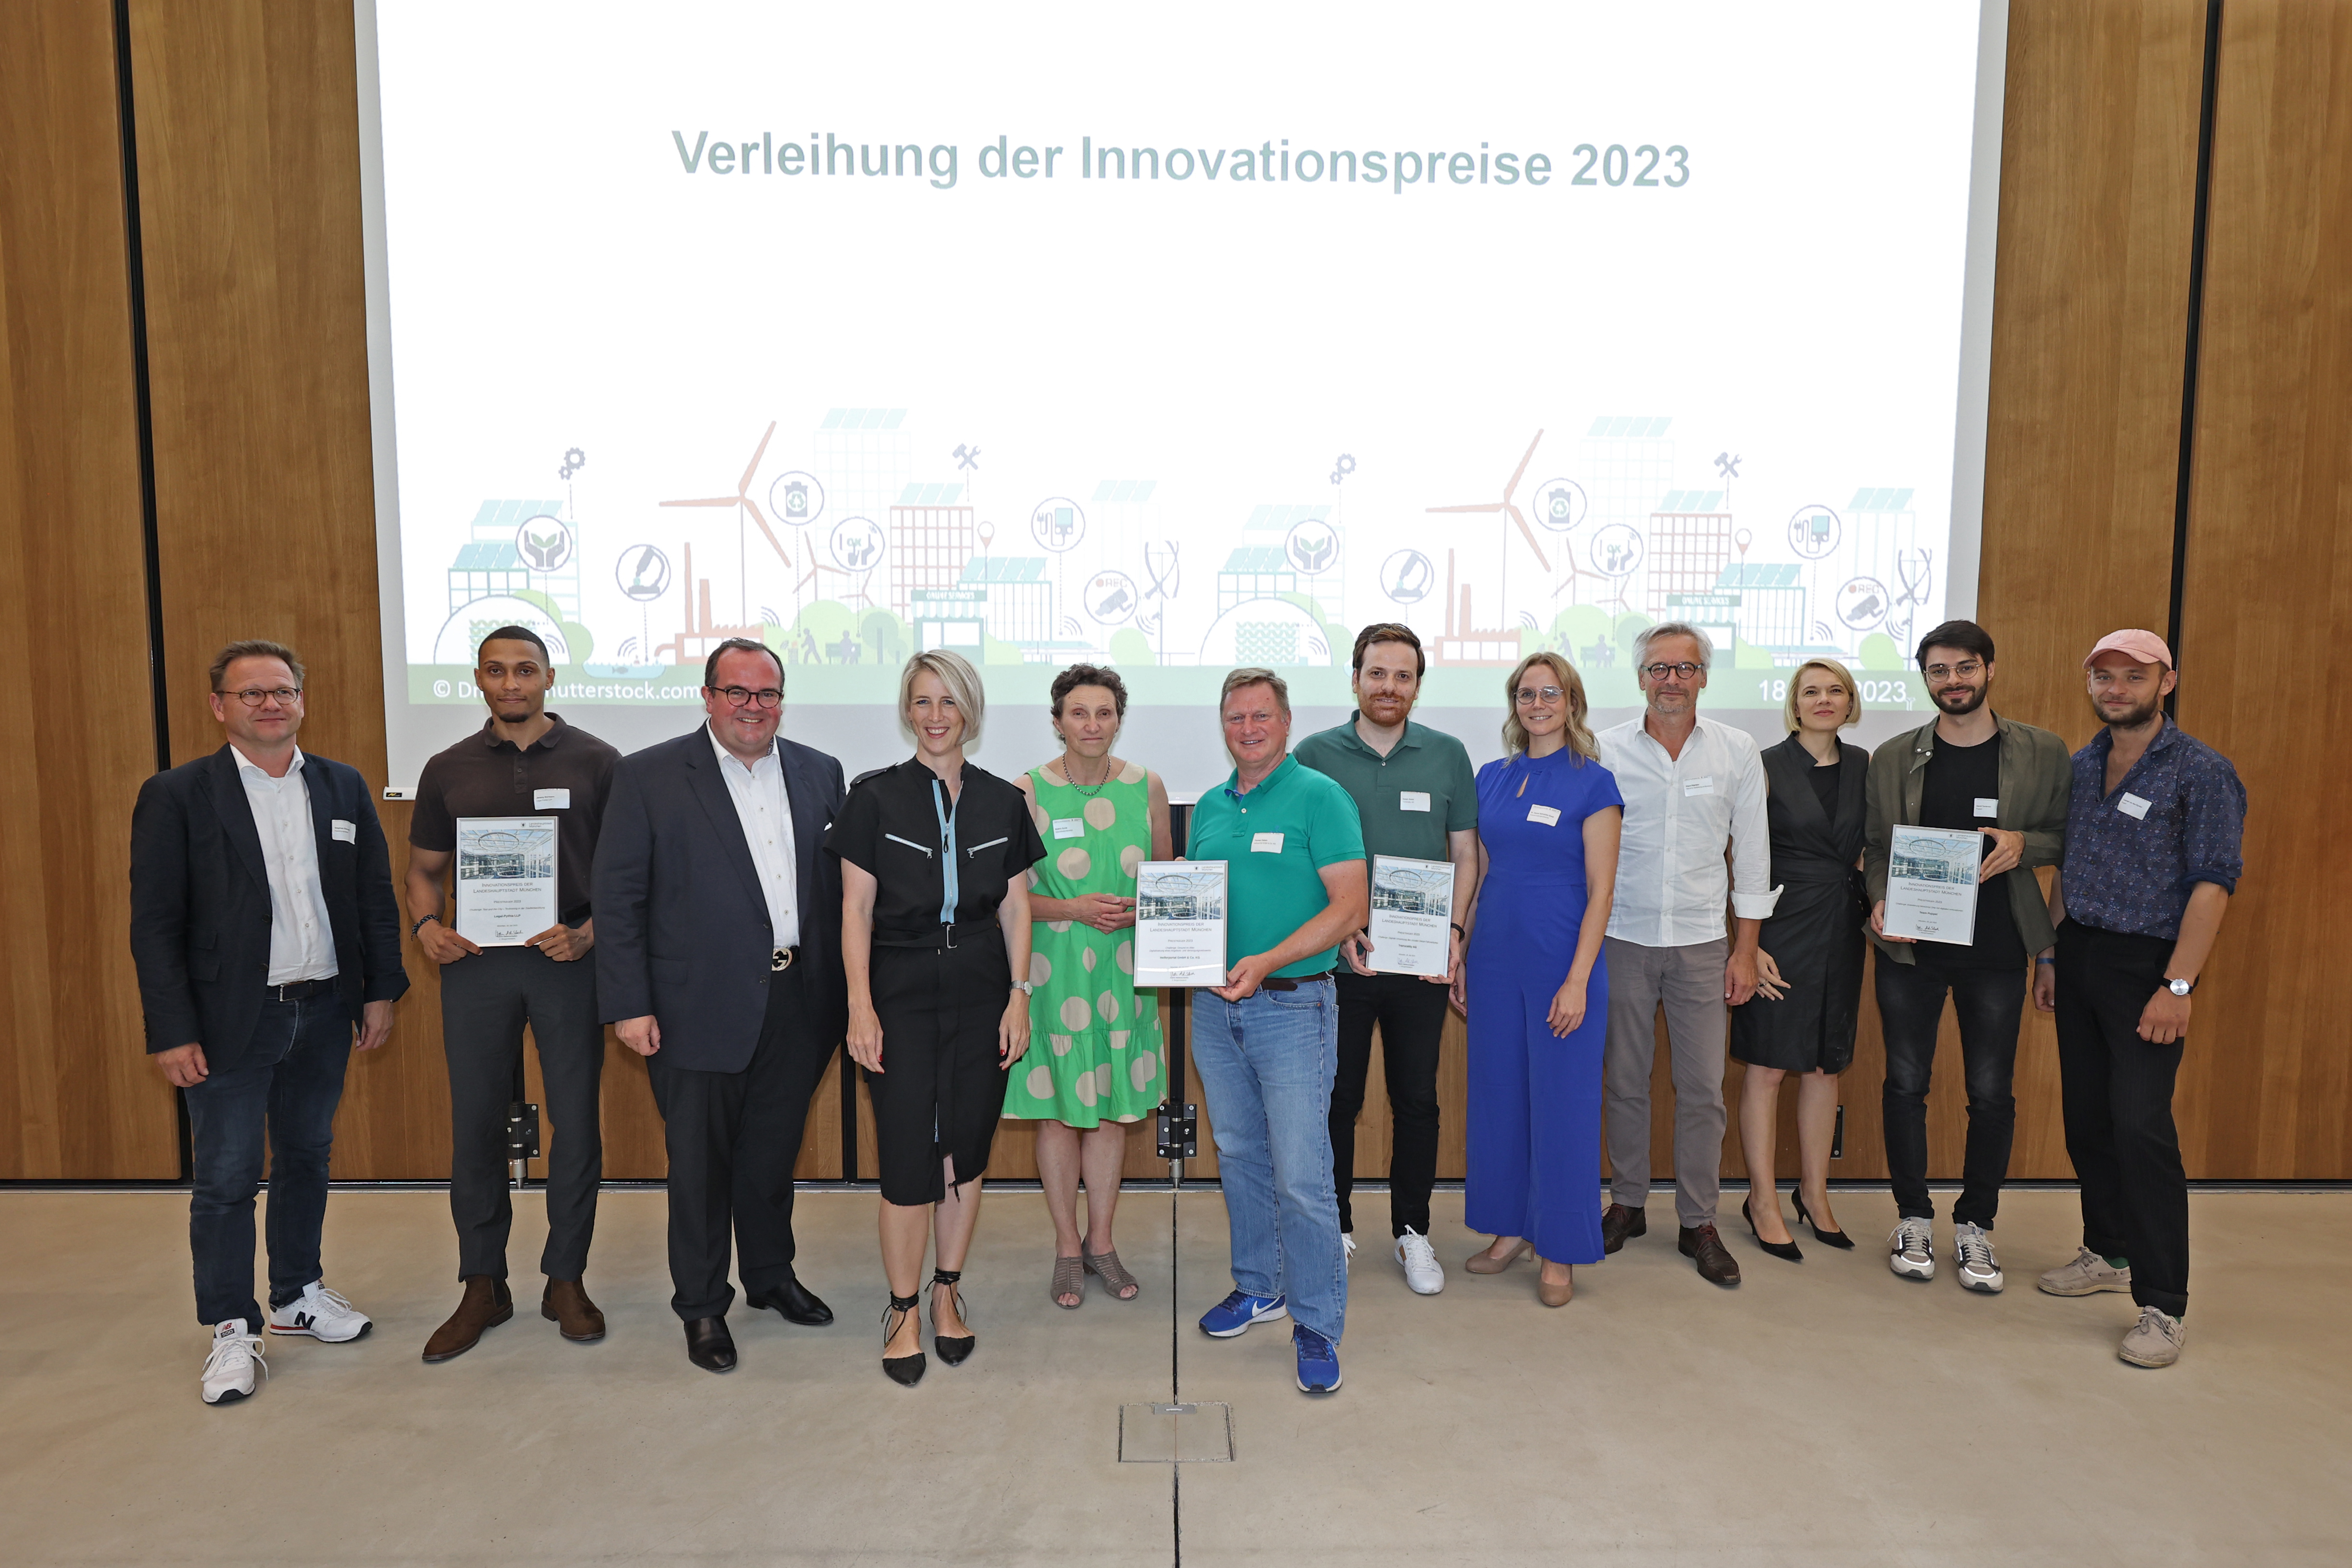 Gruppenbild zur Verleihung der Innovationspreise 2023